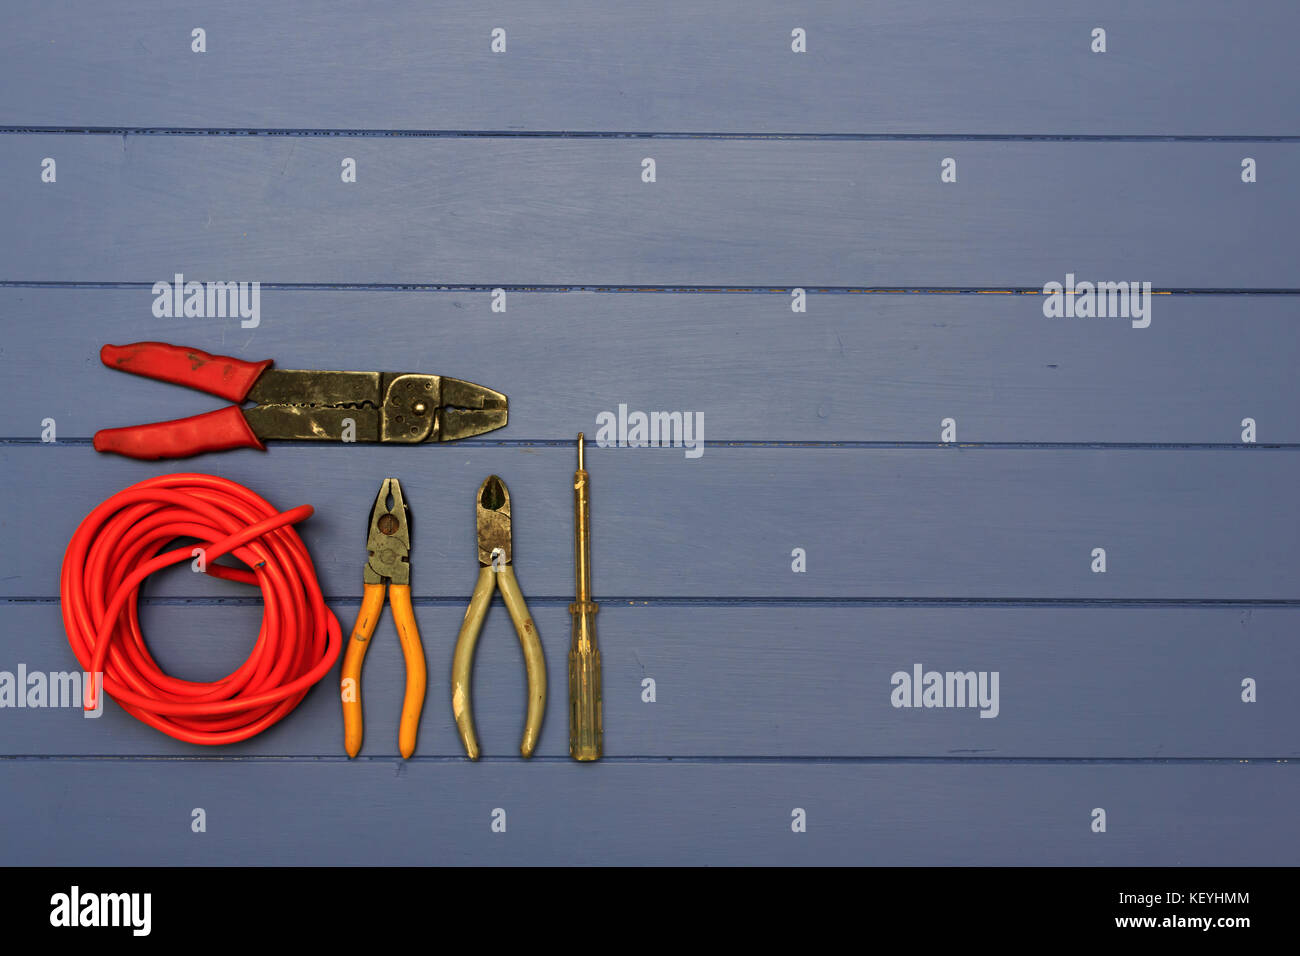 Zange, Schere, kleine elektrische Prüfung Schraubendreher, paar Abisolierzangen und Rolle der roten Kabel auf einem blauen Hintergrund schäbig Board Stockfoto